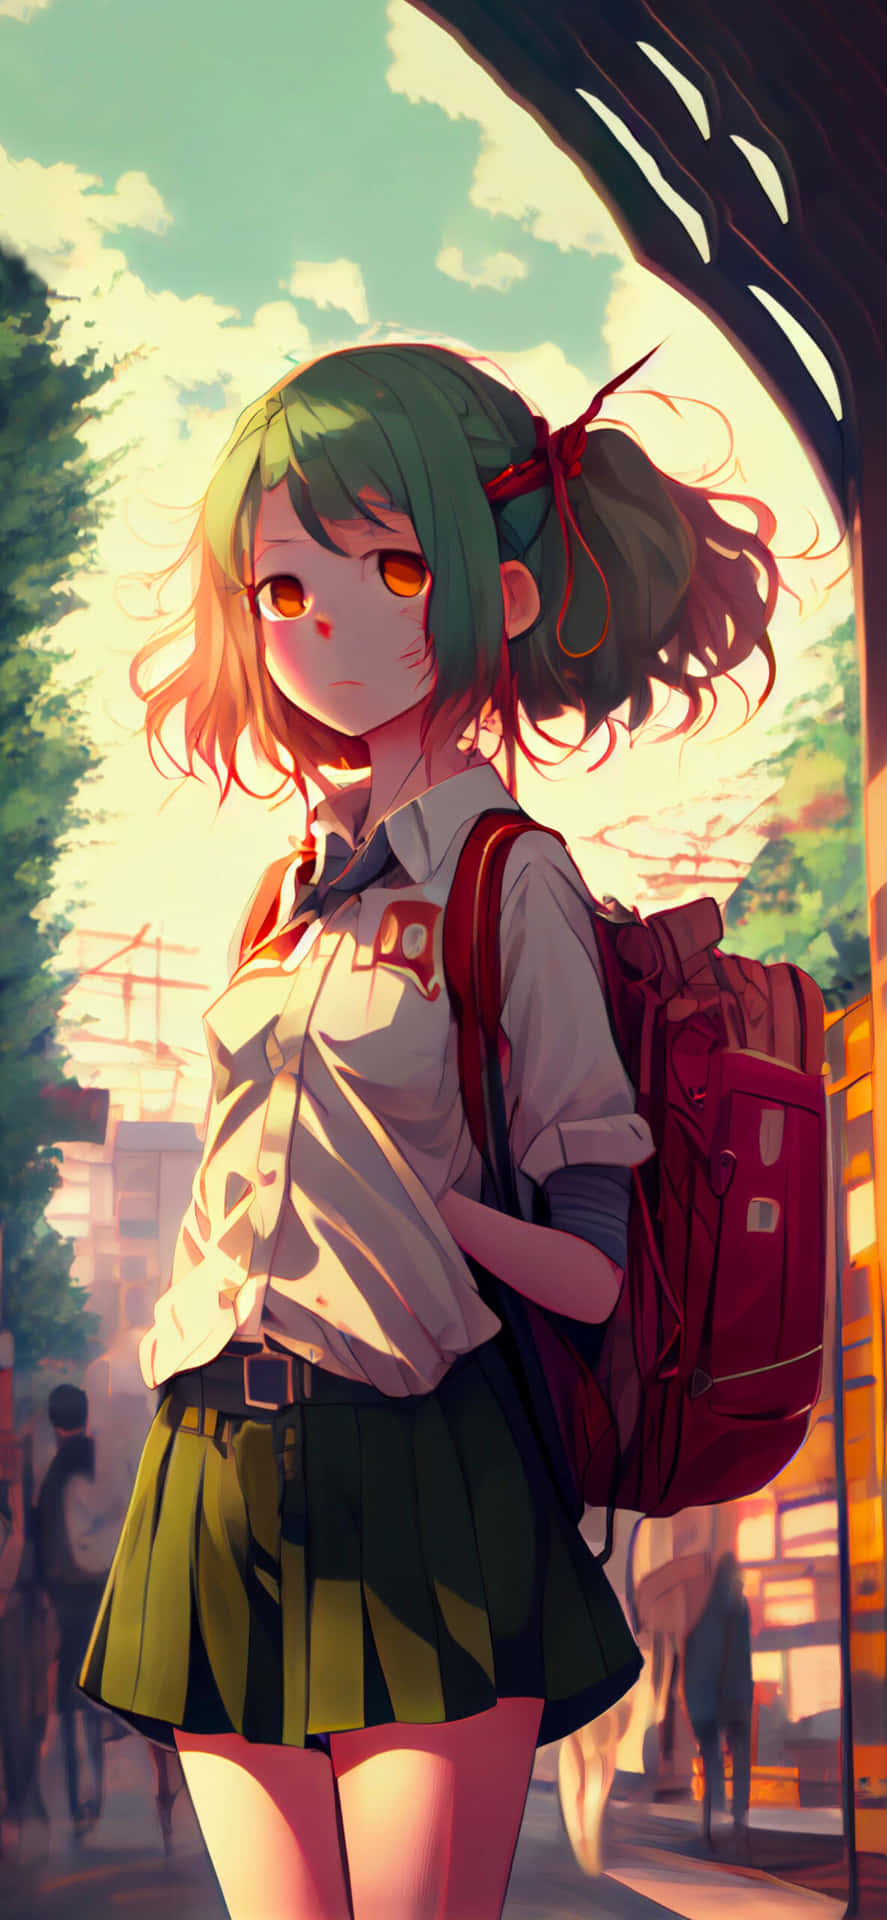 Umabela Garota De Anime Com Um Olhar Sonhador E Distante.